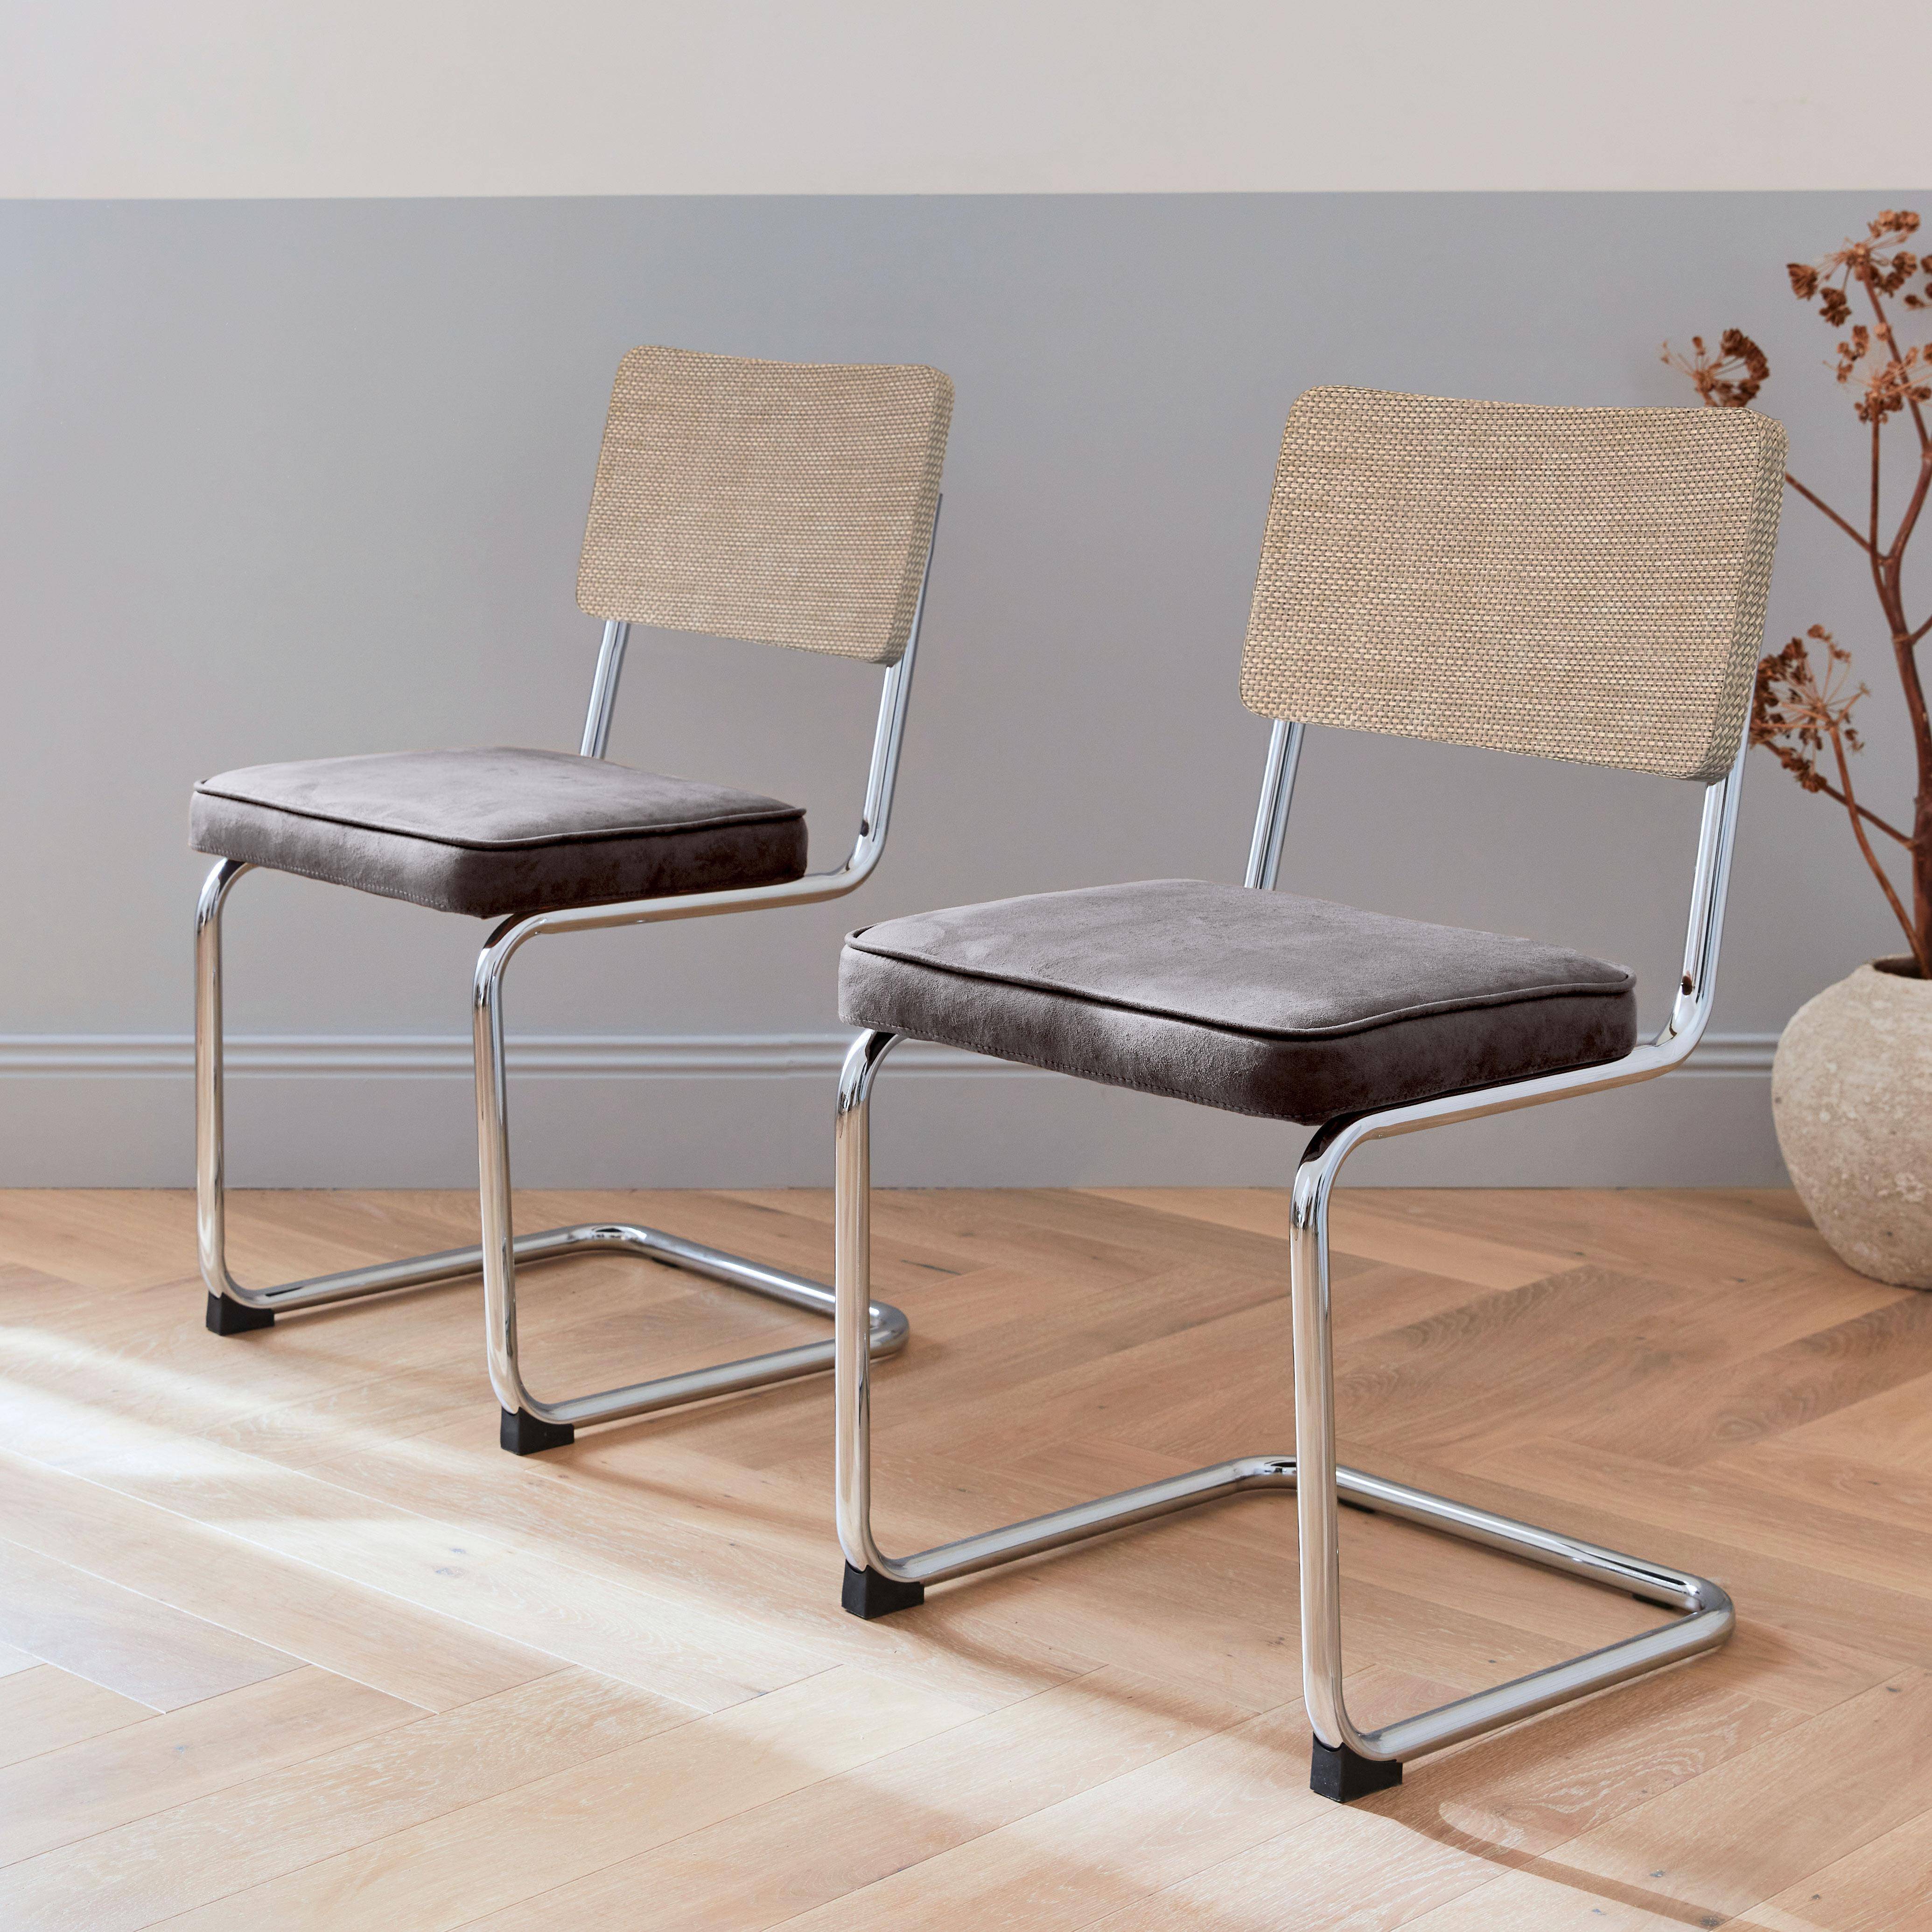 2 cadeiras cantilever - Maja - tecido preto e resina com efeito rattan, 46 x 54,5 x 84,5cm Photo1